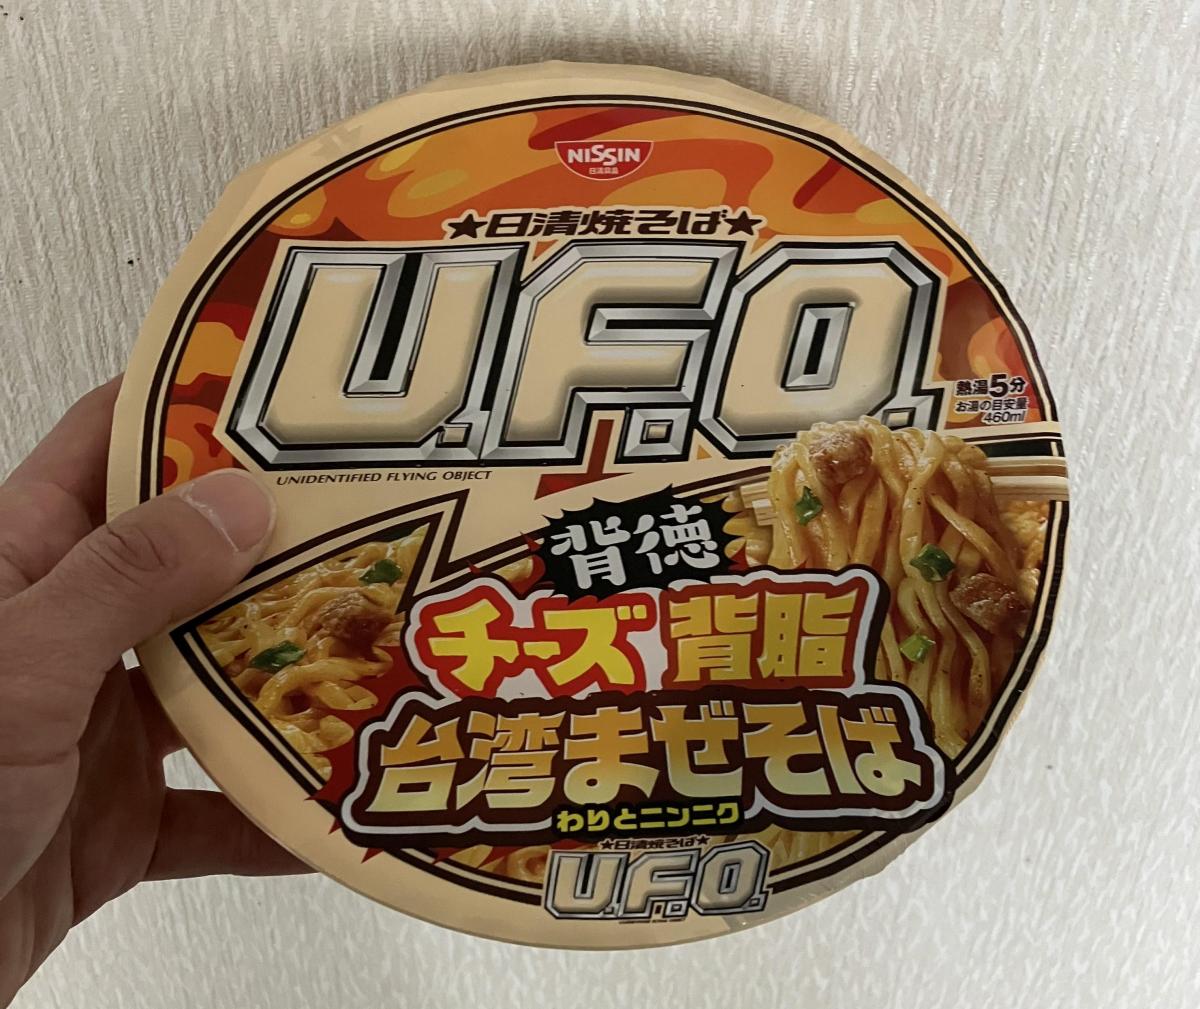 日本製/今治産 食品 詰め合わせ カップ麺 UFO背徳チーズ台湾まぜそば